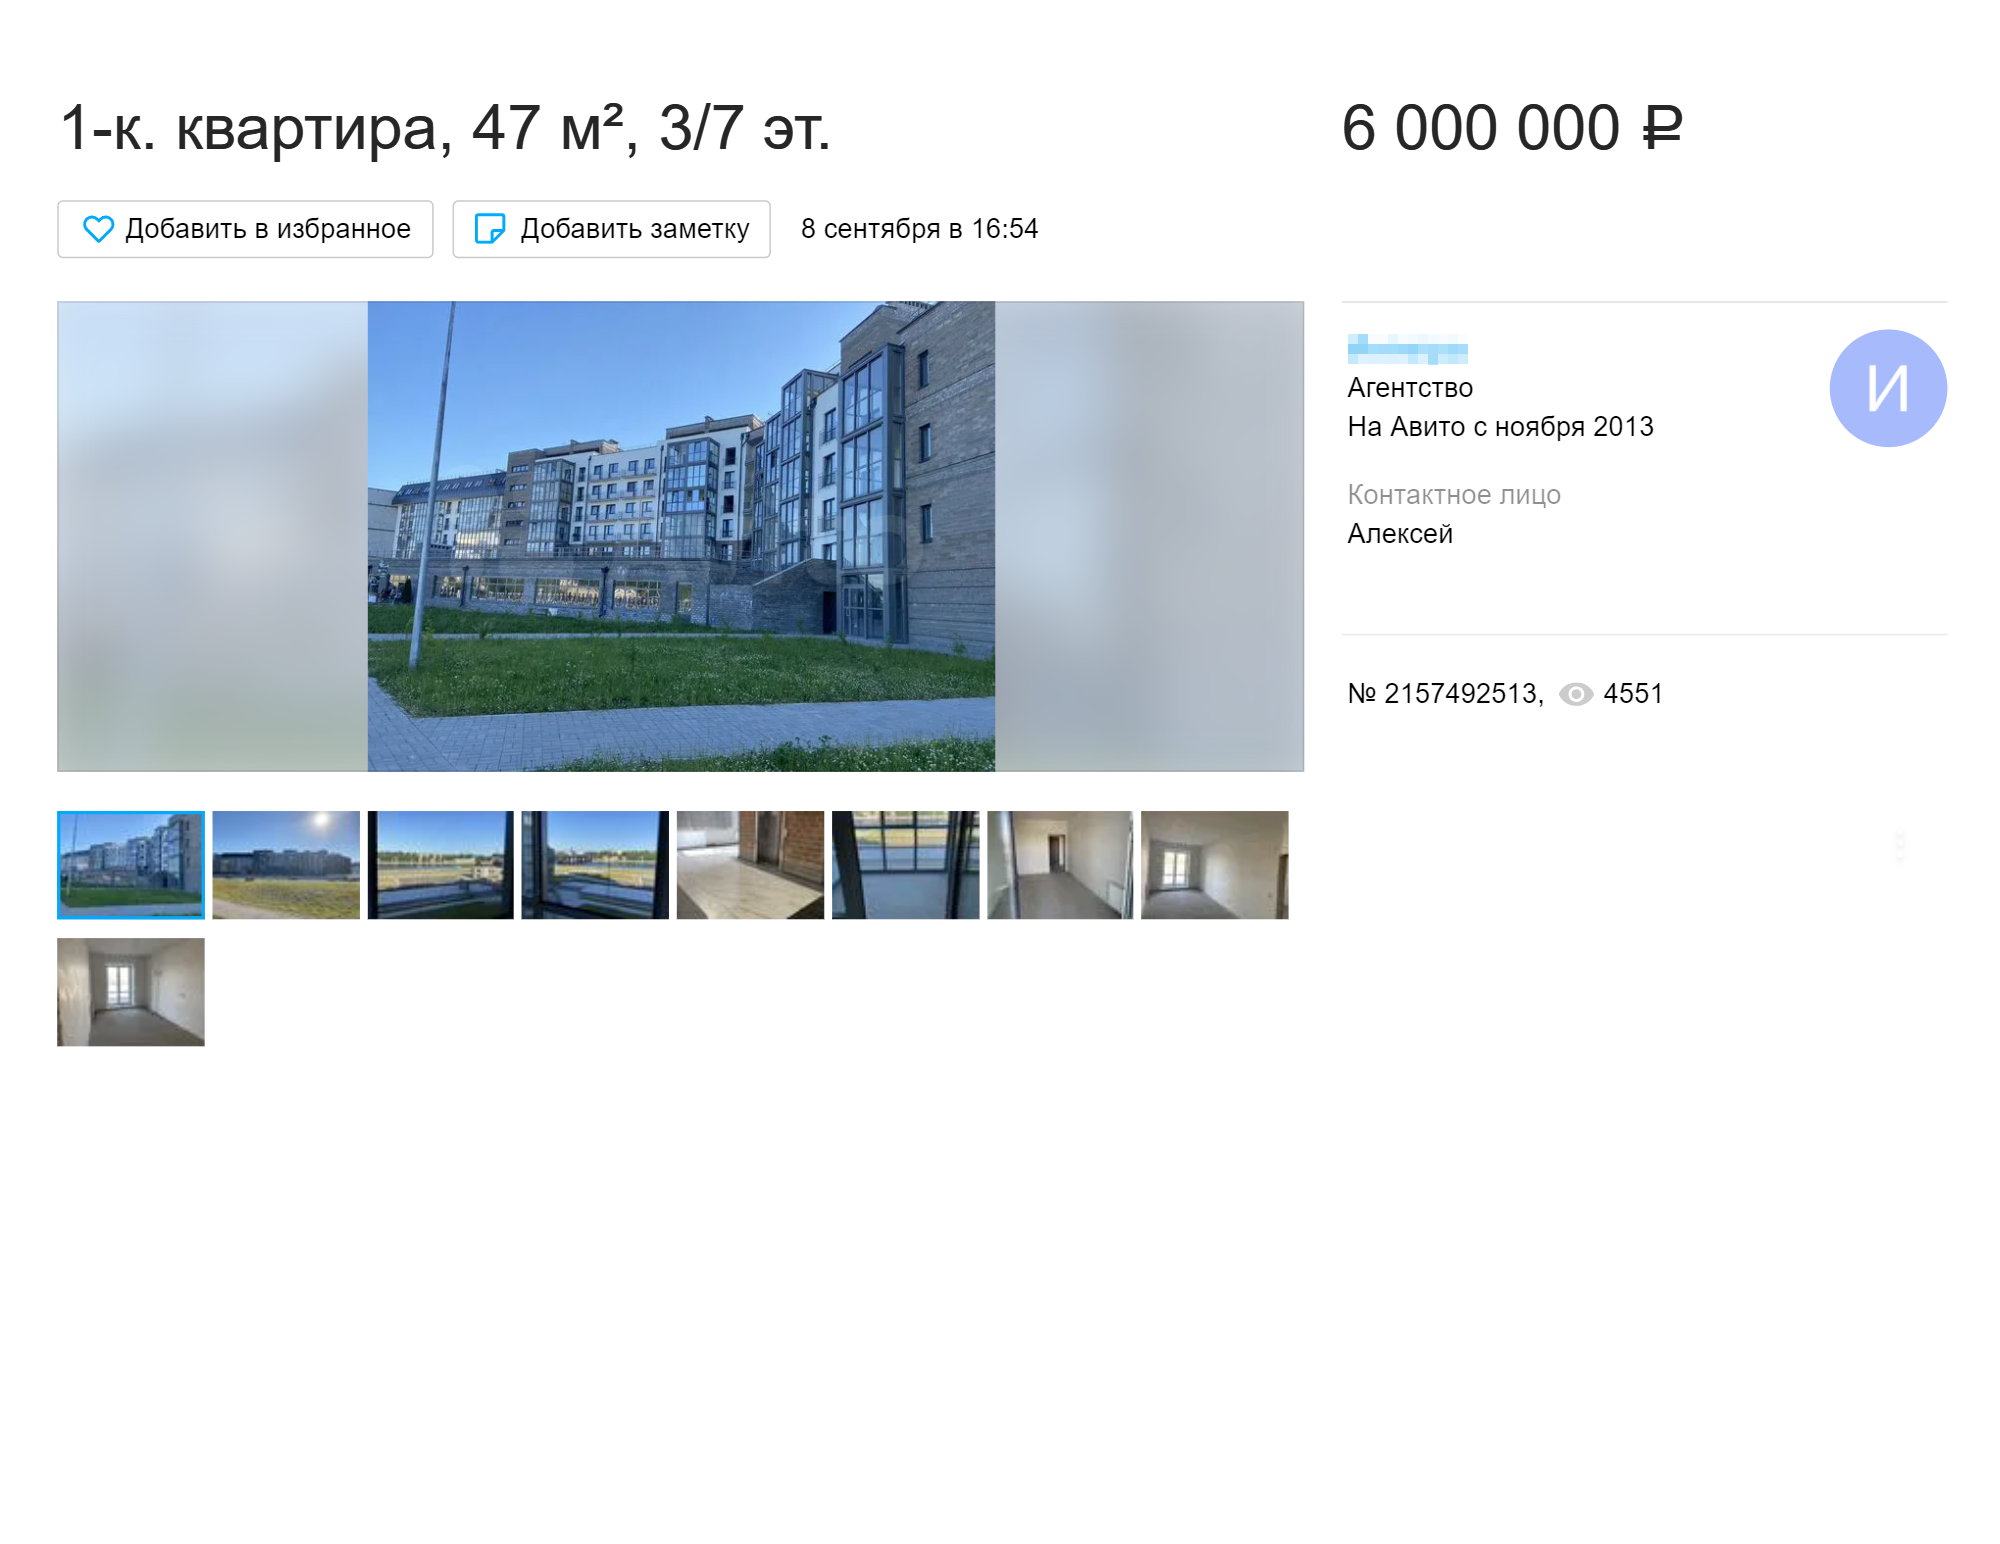 Новая однушка в клубном доме в районе Завеличье будет стоить 6 млн рублей